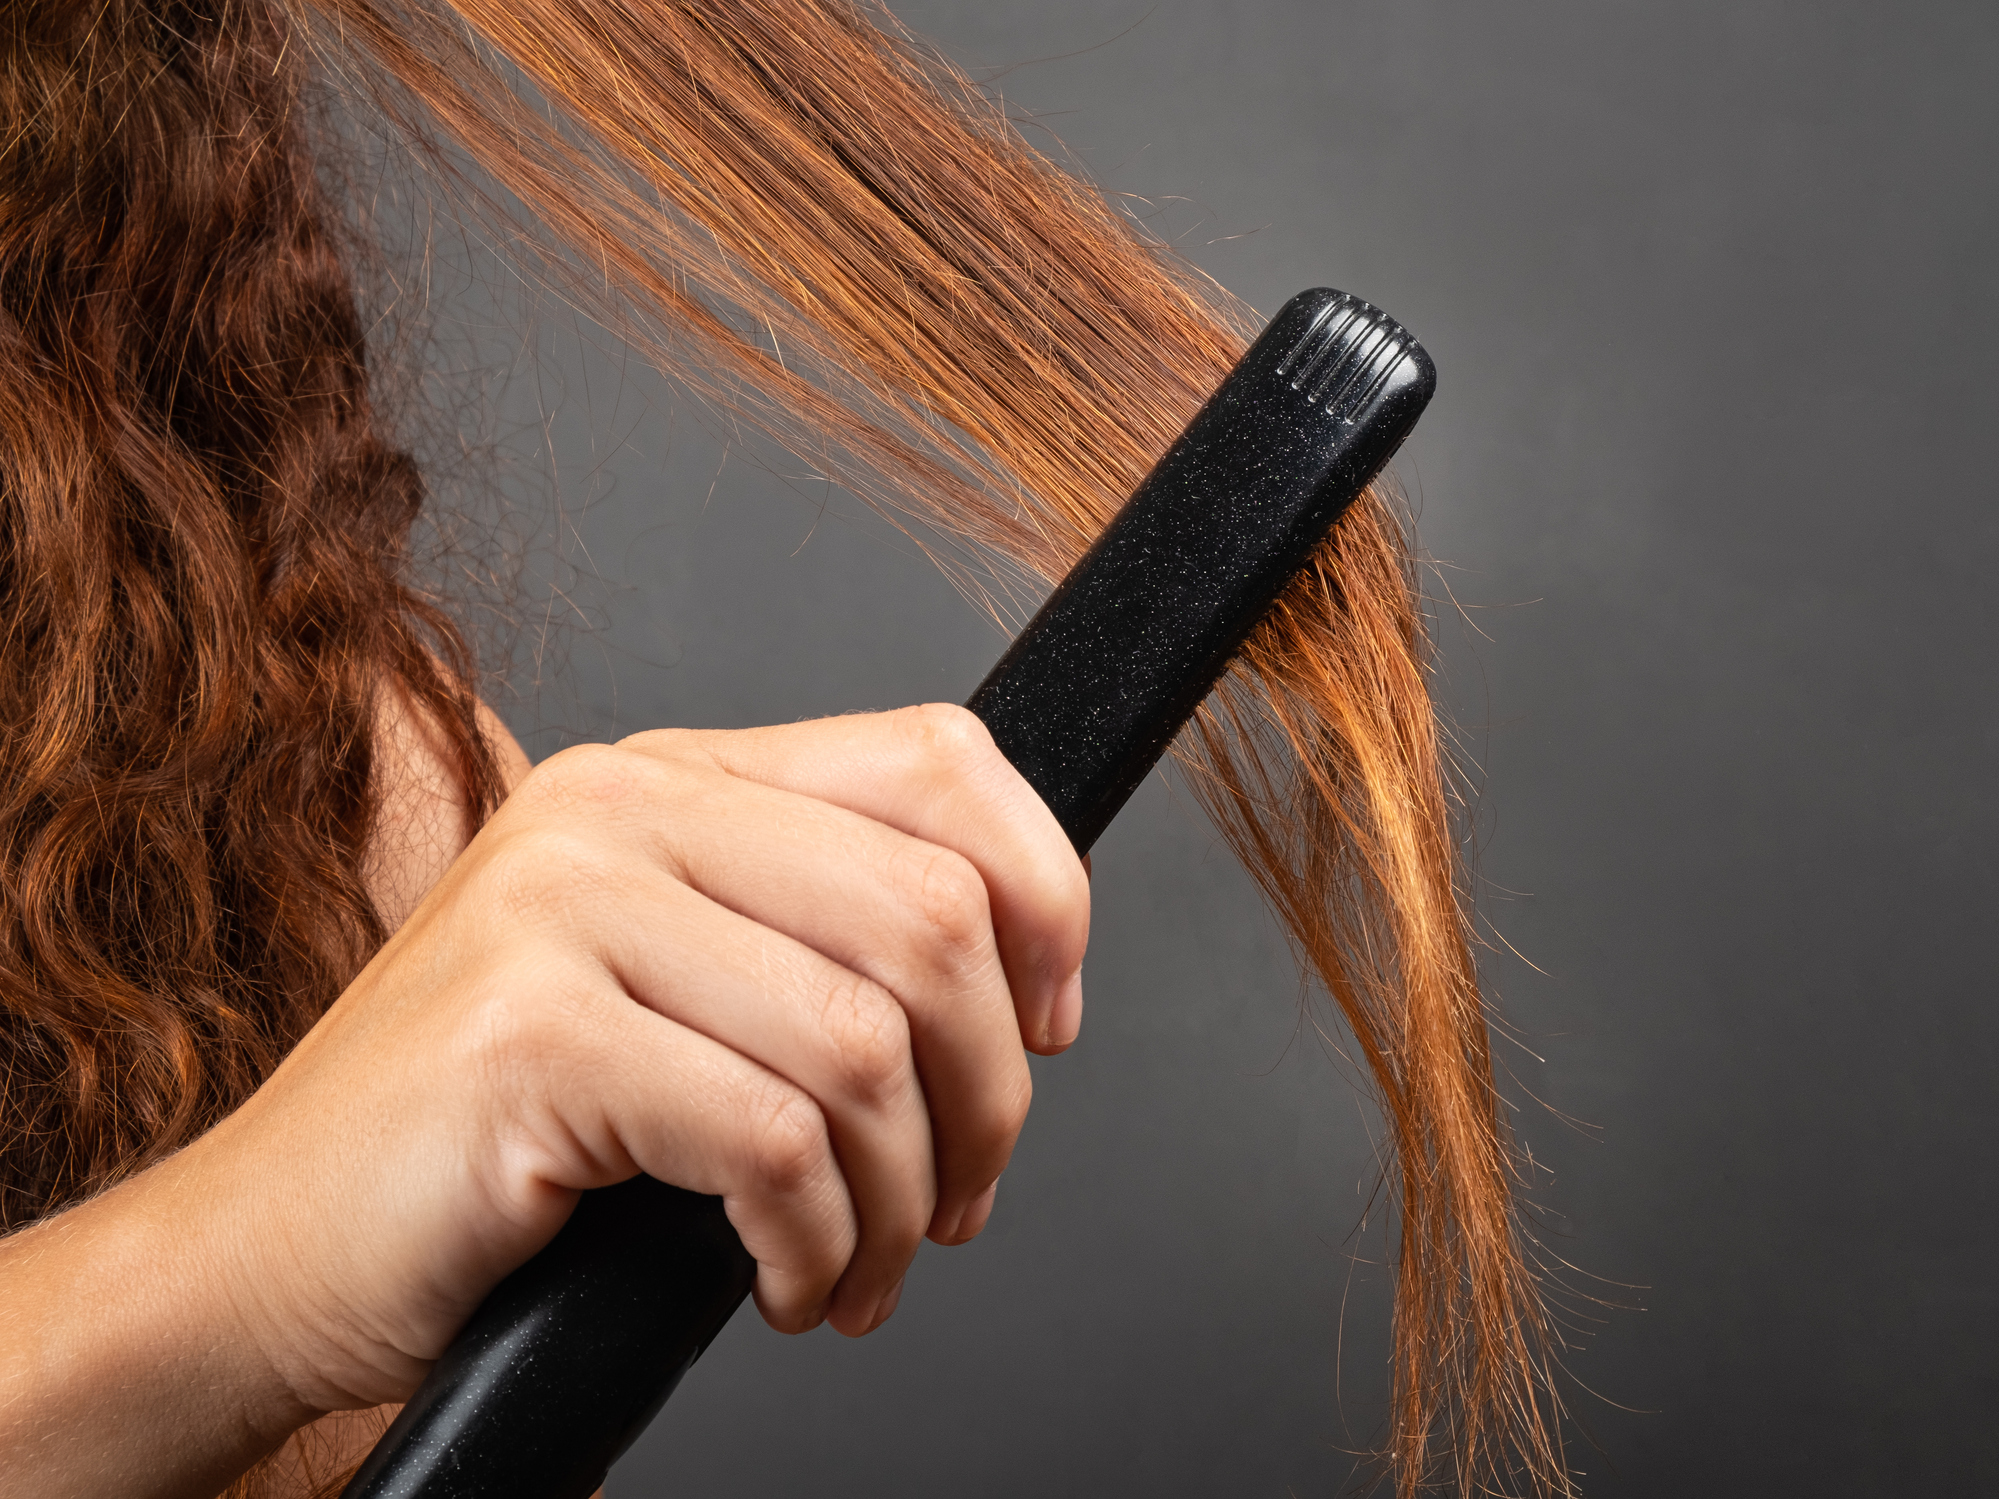 Mujer planchando un mechón de su cabello (Getty Images)